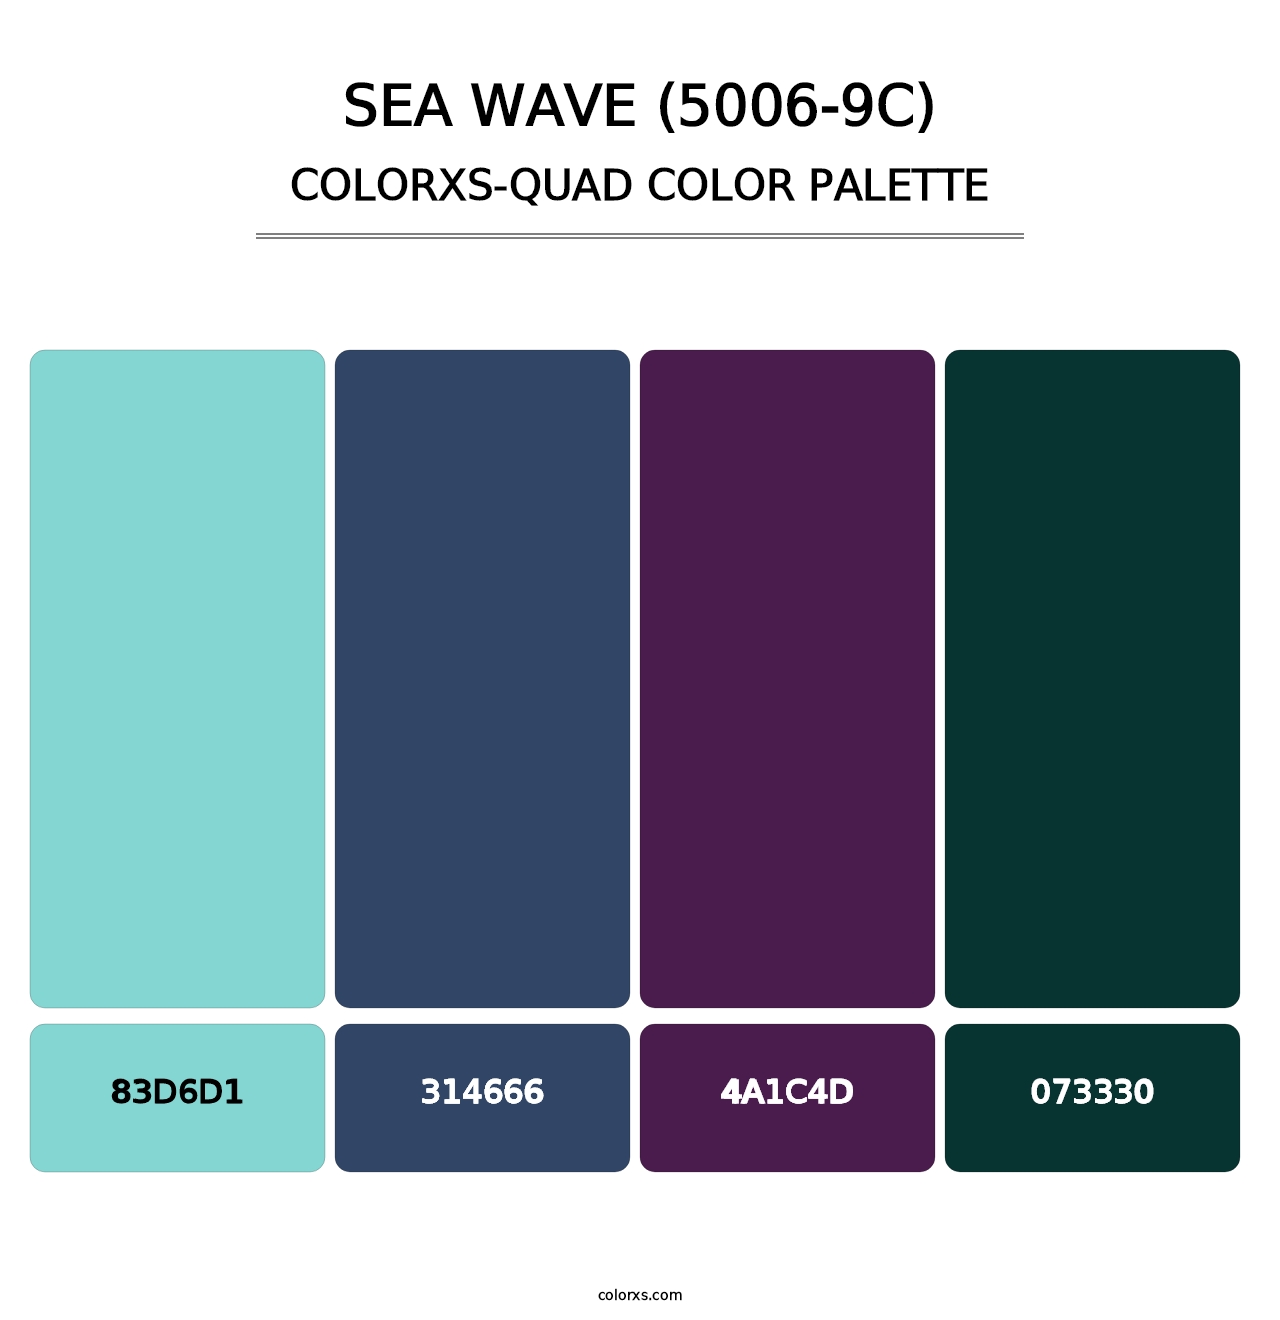 Sea Wave (5006-9C) - Colorxs Quad Palette